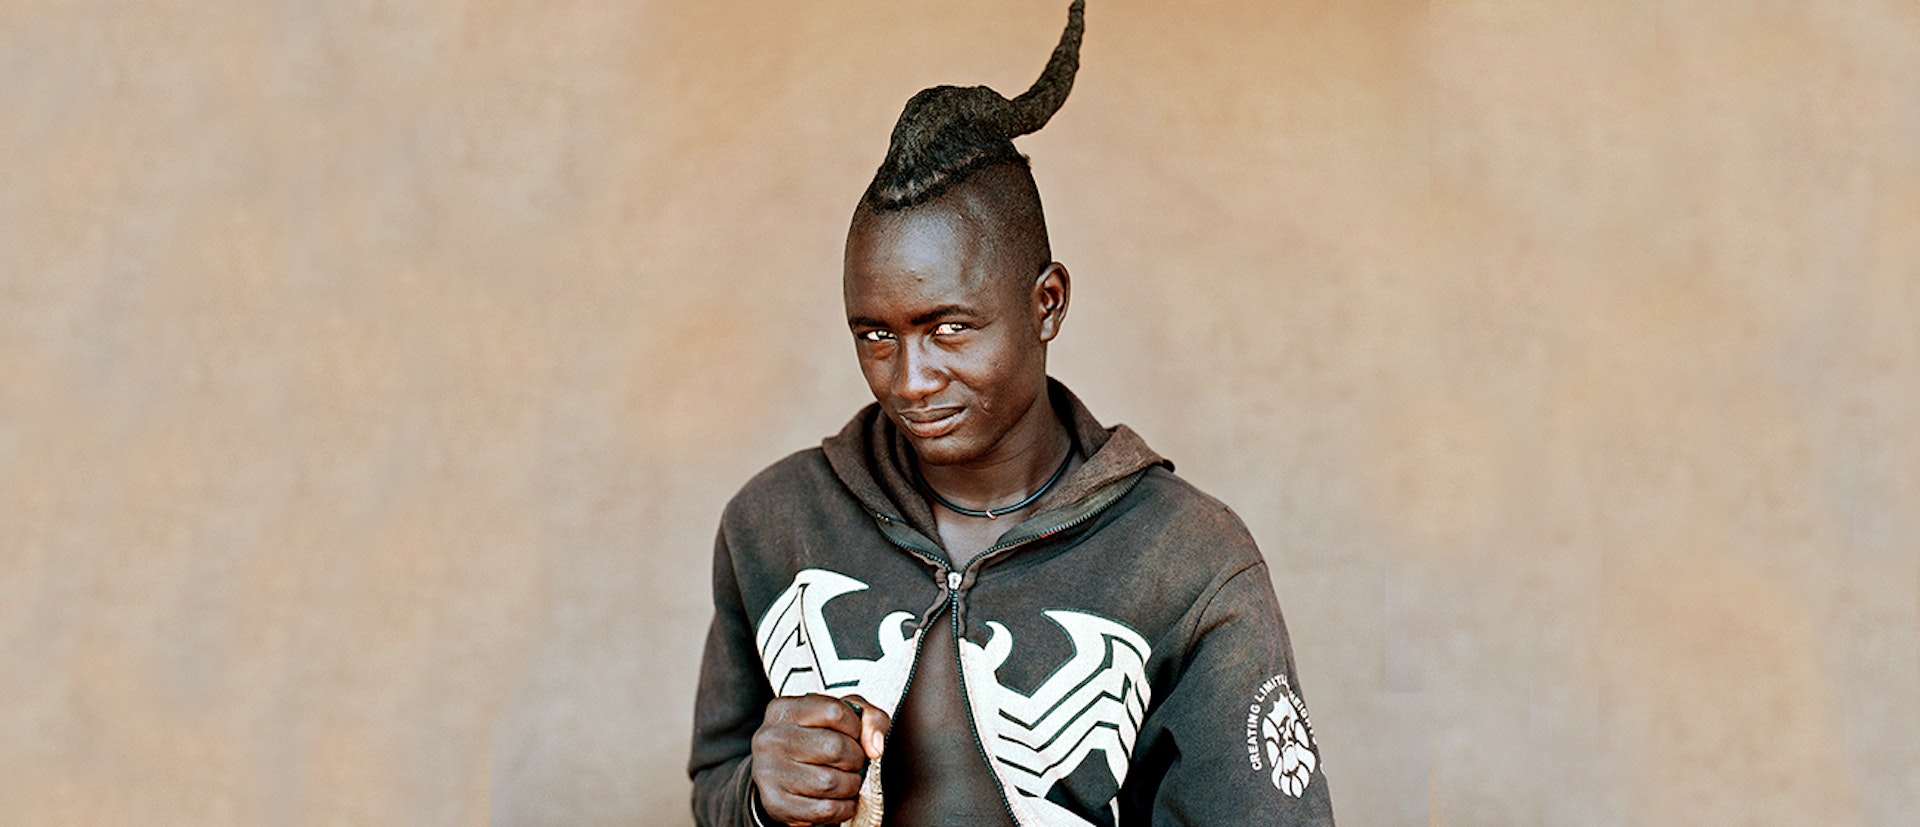 The stylish self-portraits of Namibia’s last nomadic people